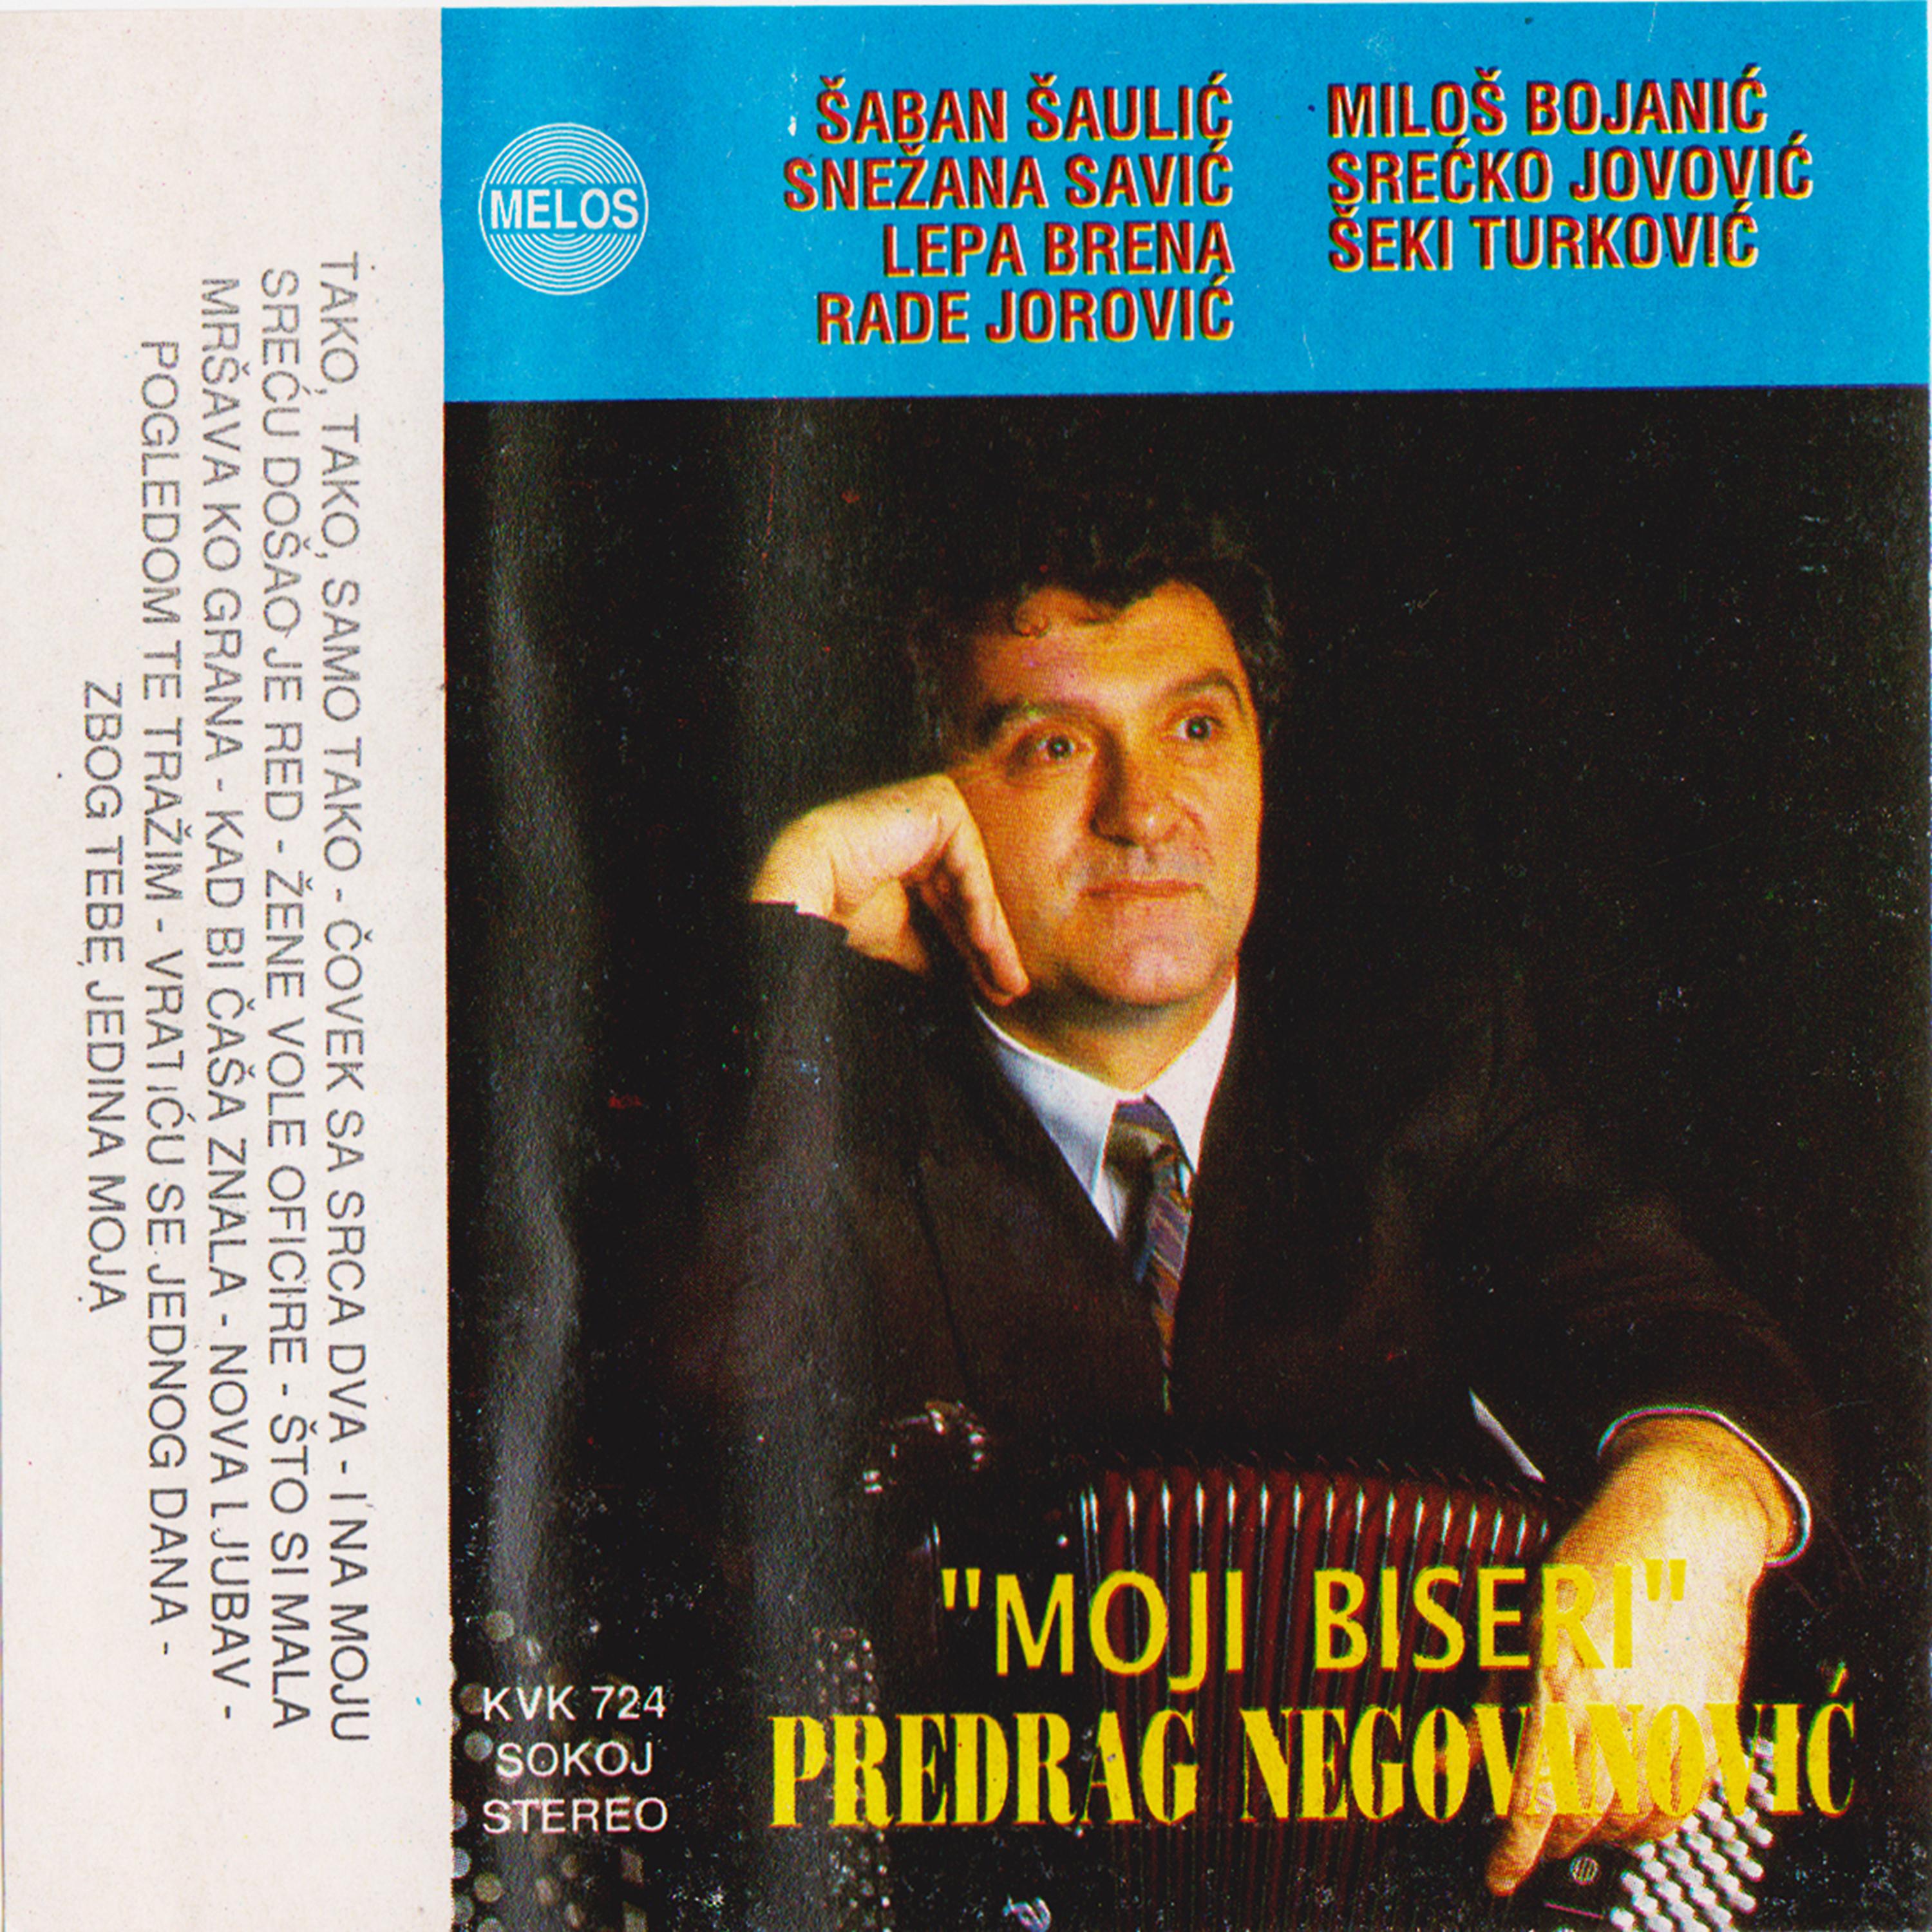 Постер альбома Predrag Negovanovic - Moji biseri